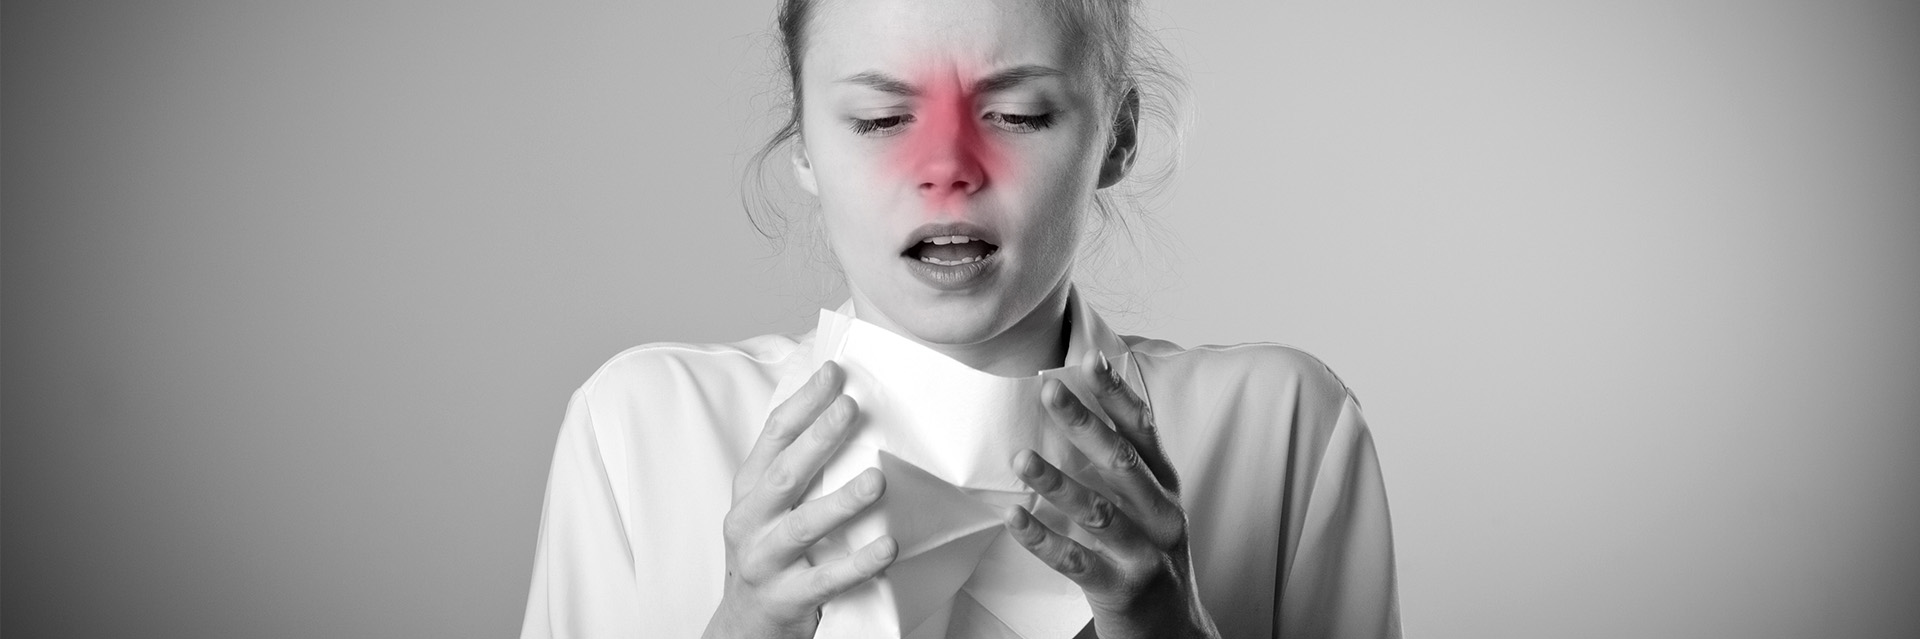 Obrzęk błony śluzowej nosa – przyczyny, objawy, leczenie